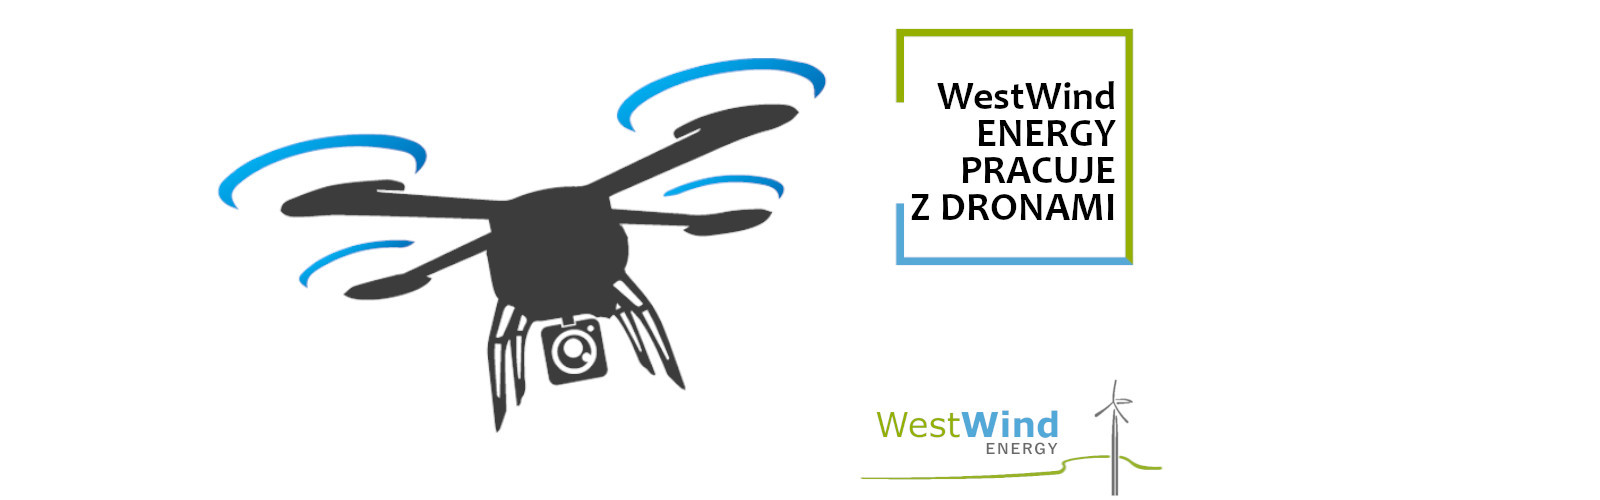 WestWind Energy pracuje z dronami